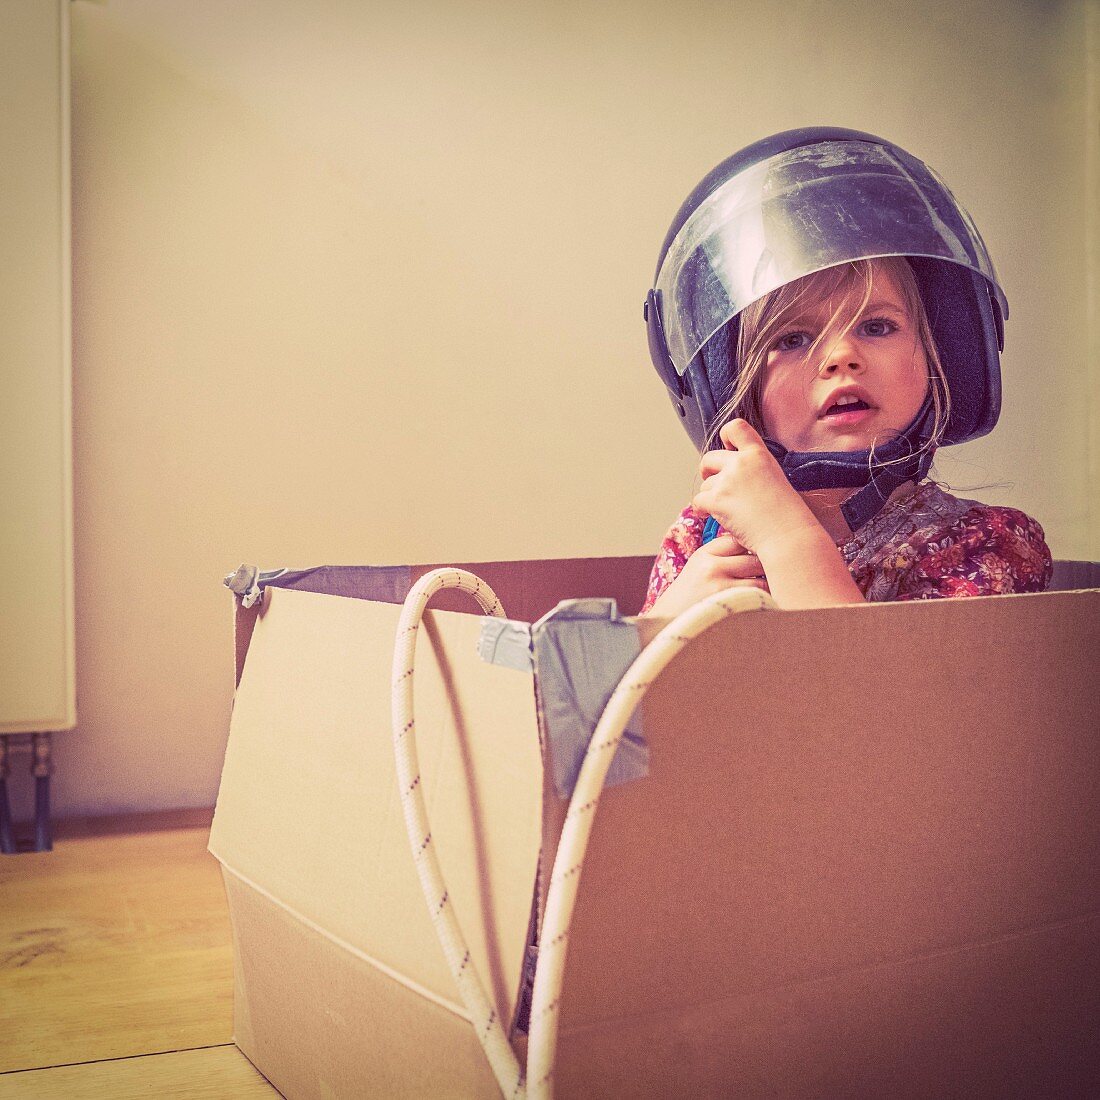 A little girl wearing a motorbike helmet sitting in a cardboard box